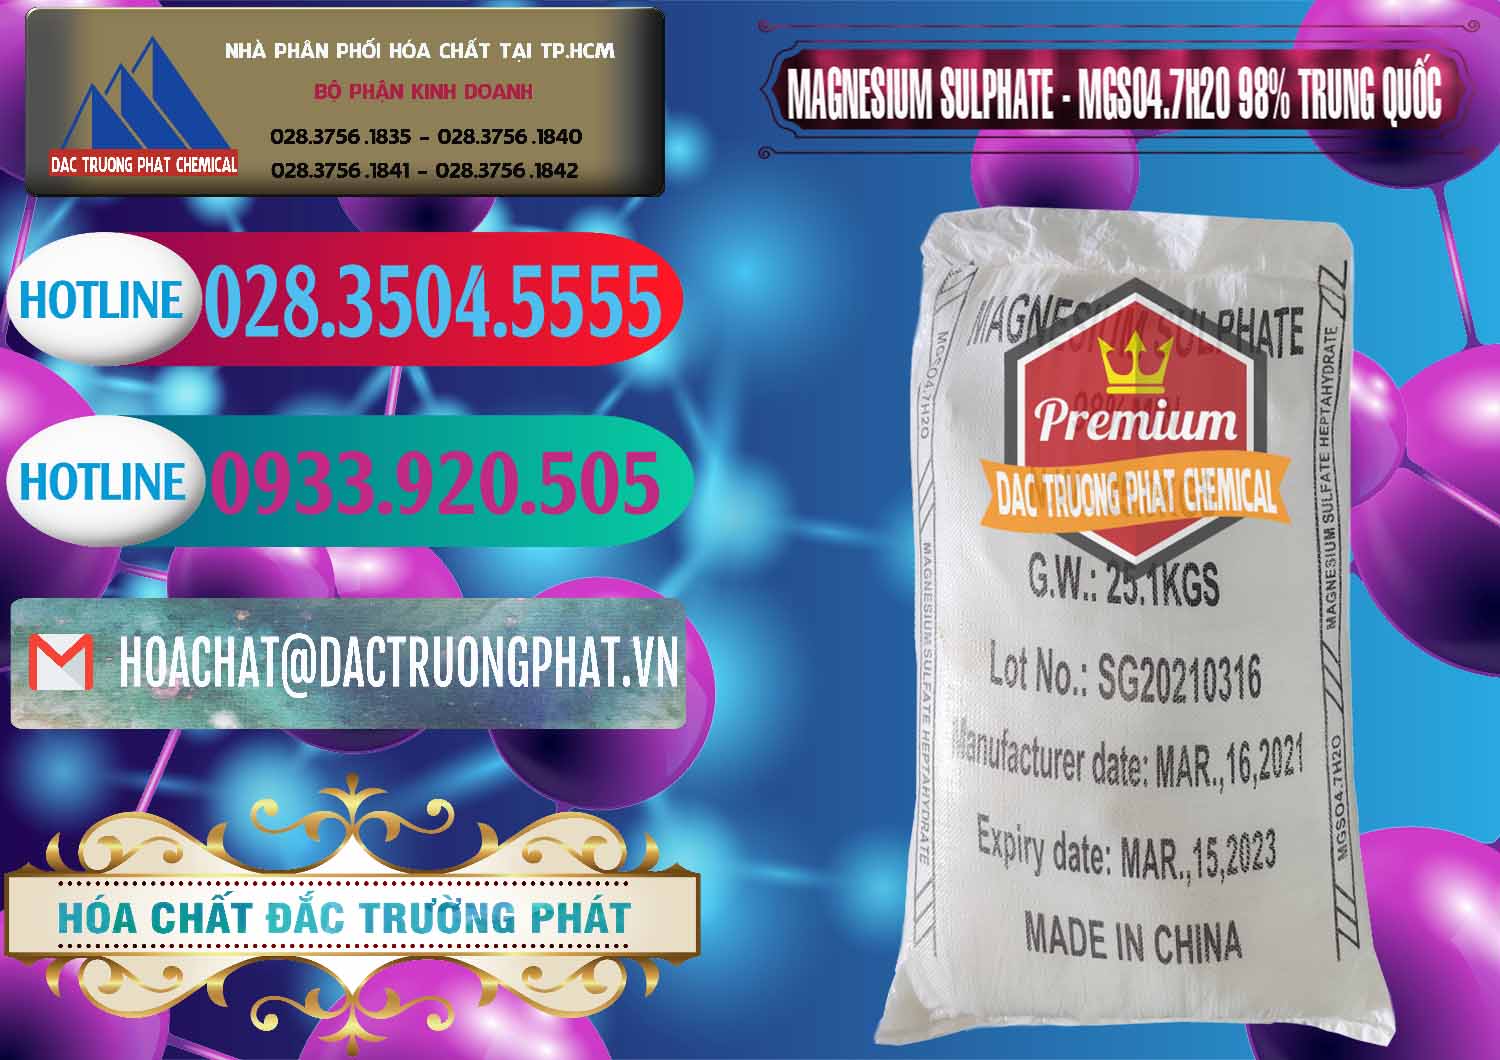 Cty bán và cung ứng MGSO4.7H2O – Magnesium Sulphate 98% Trung Quốc China - 0229 - Kinh doanh ( phân phối ) hóa chất tại TP.HCM - truongphat.vn